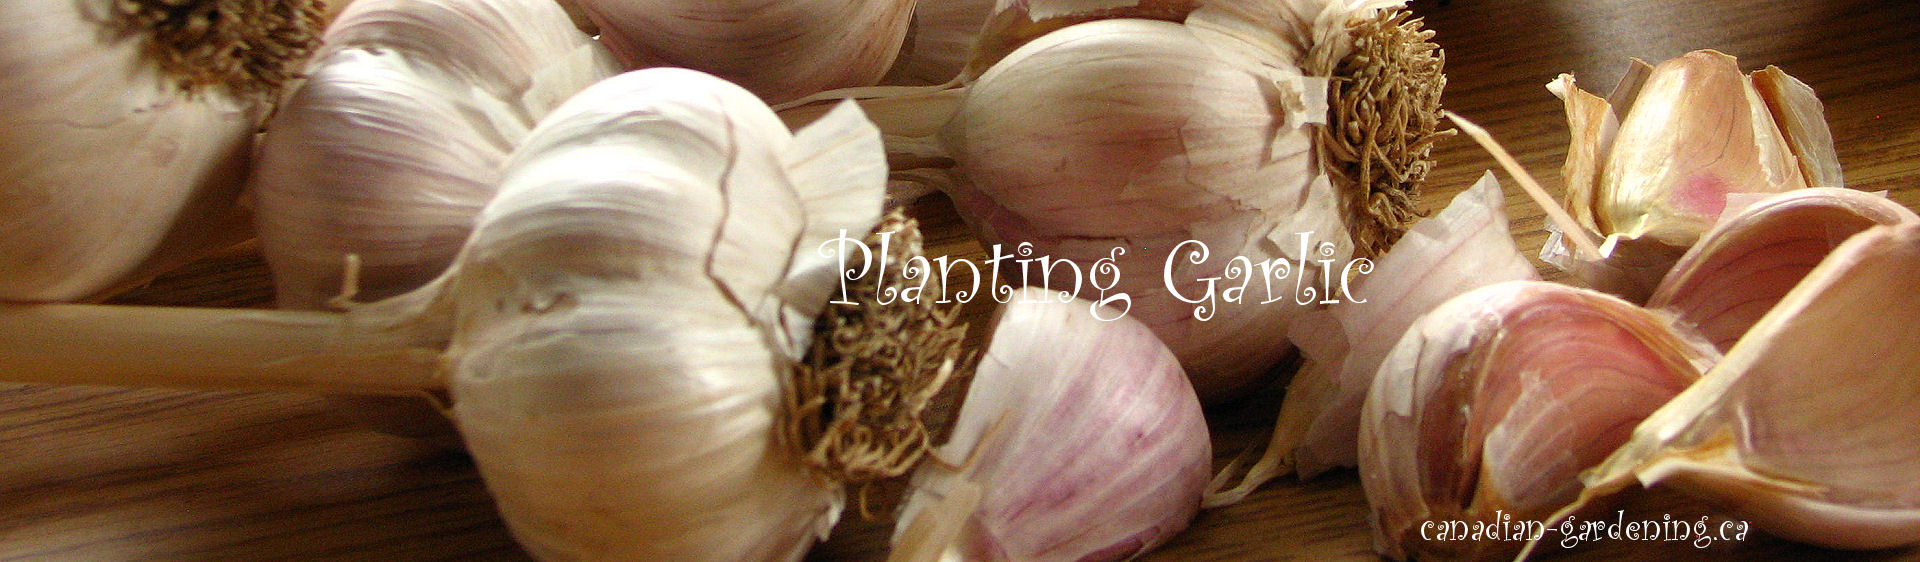 planting garlic  logo